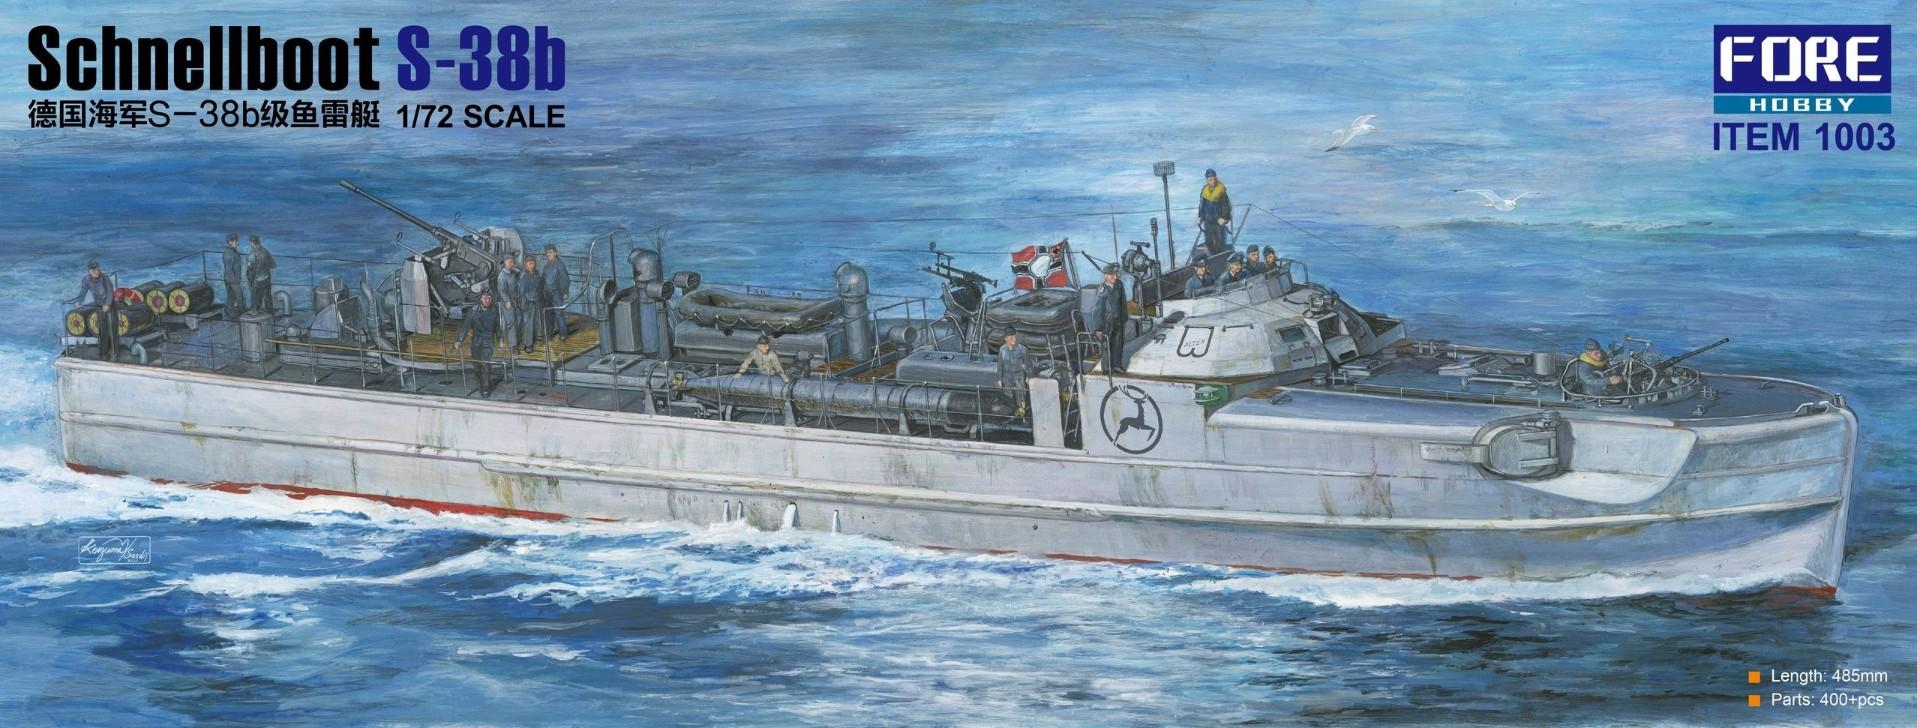 1003  флот  Schnellboot S-38B  (1:72)